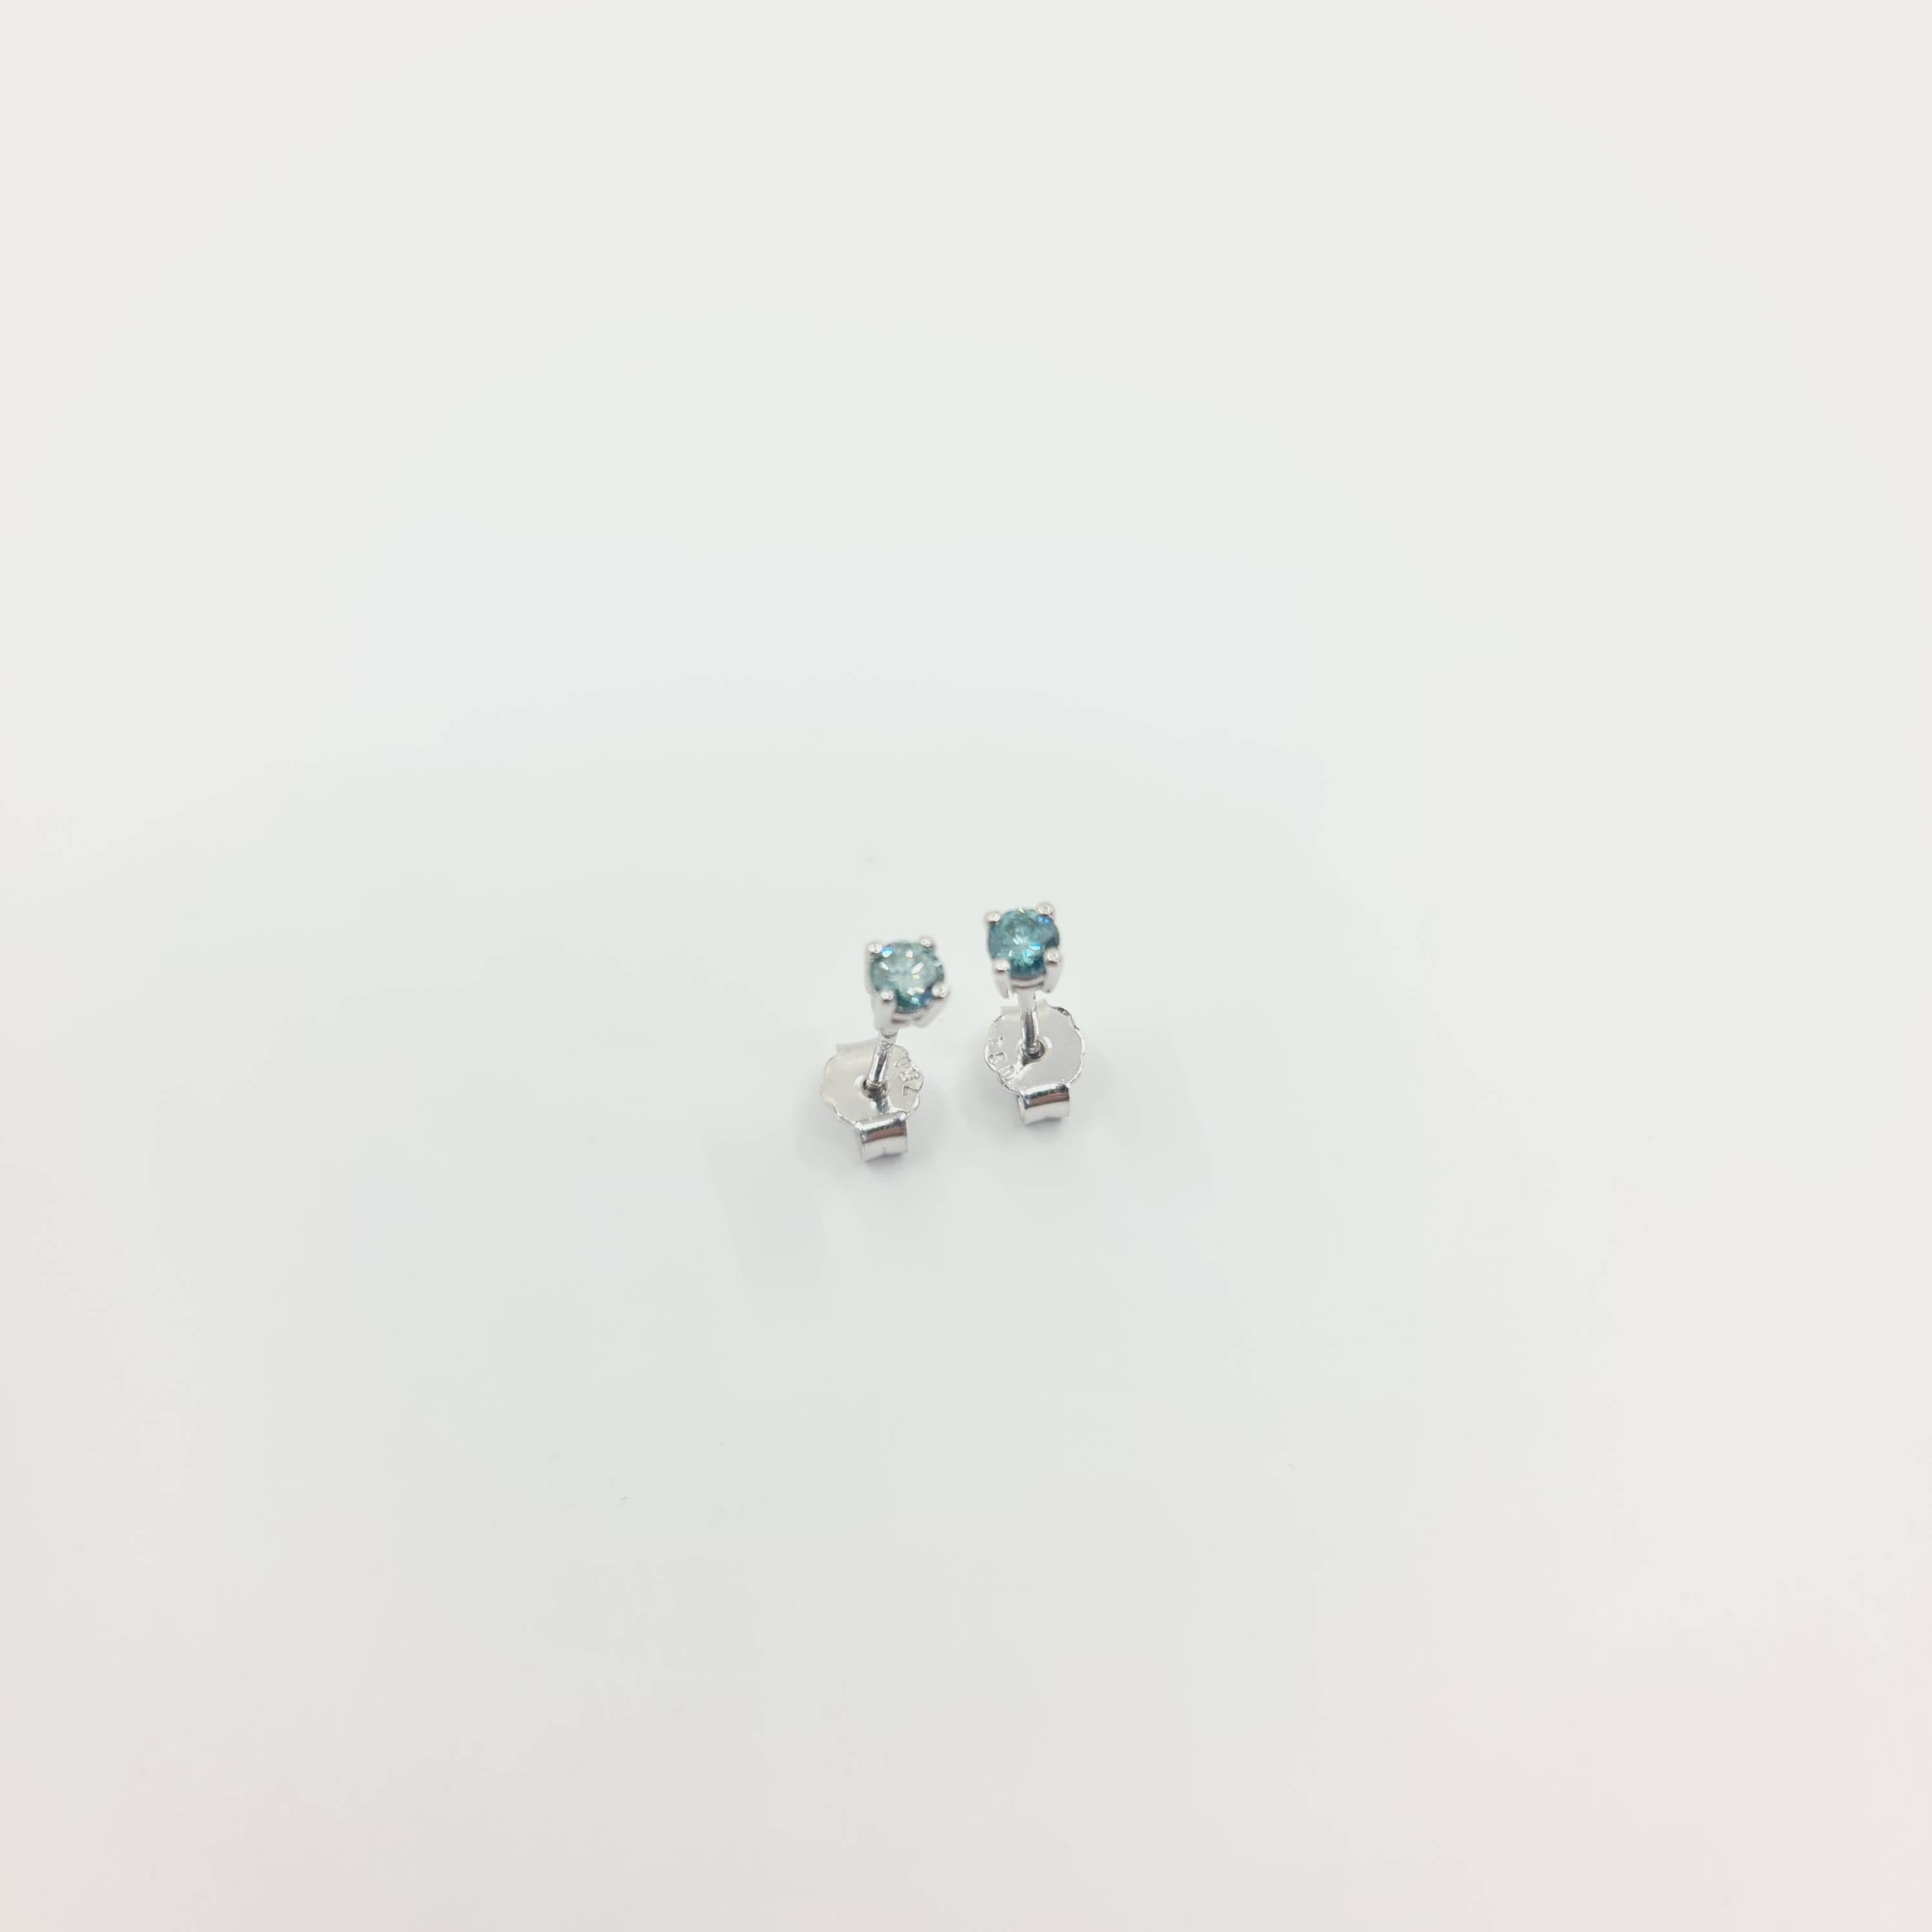 Fancy Blue-Green Diamond Earrings 0.27 Ct Fancy Intense Blue-Green/VS 18k Gold For Sale 2